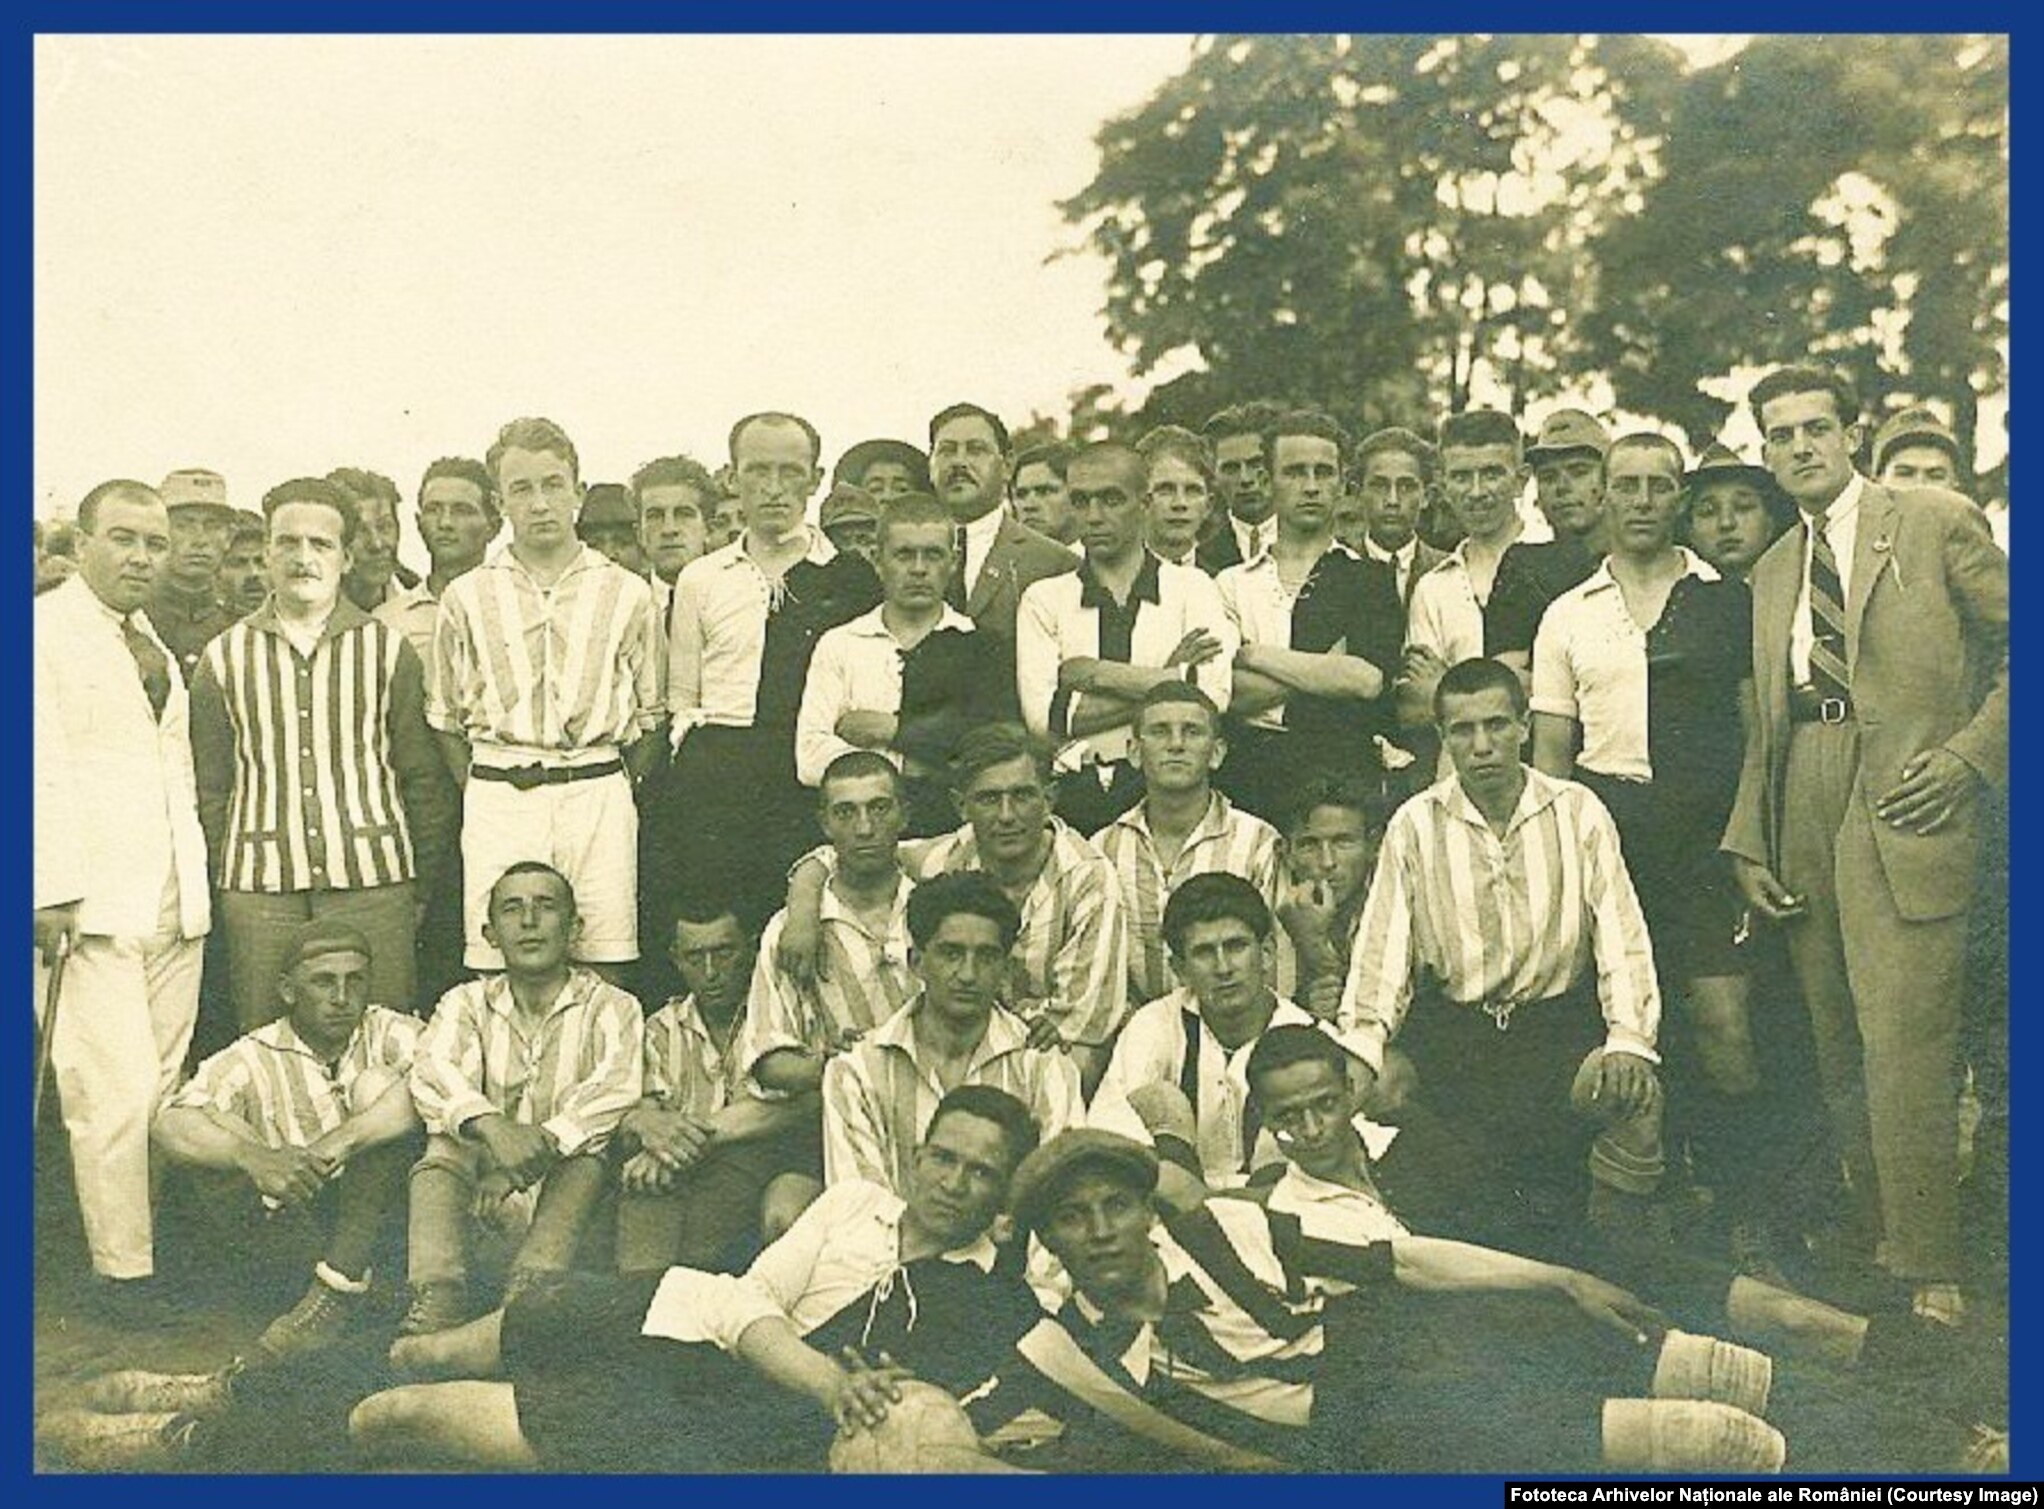 1925, Alba Iulia. Echipa de fotbal Unirea Alba Iulia după meciul cu Şoimii Sibiu.